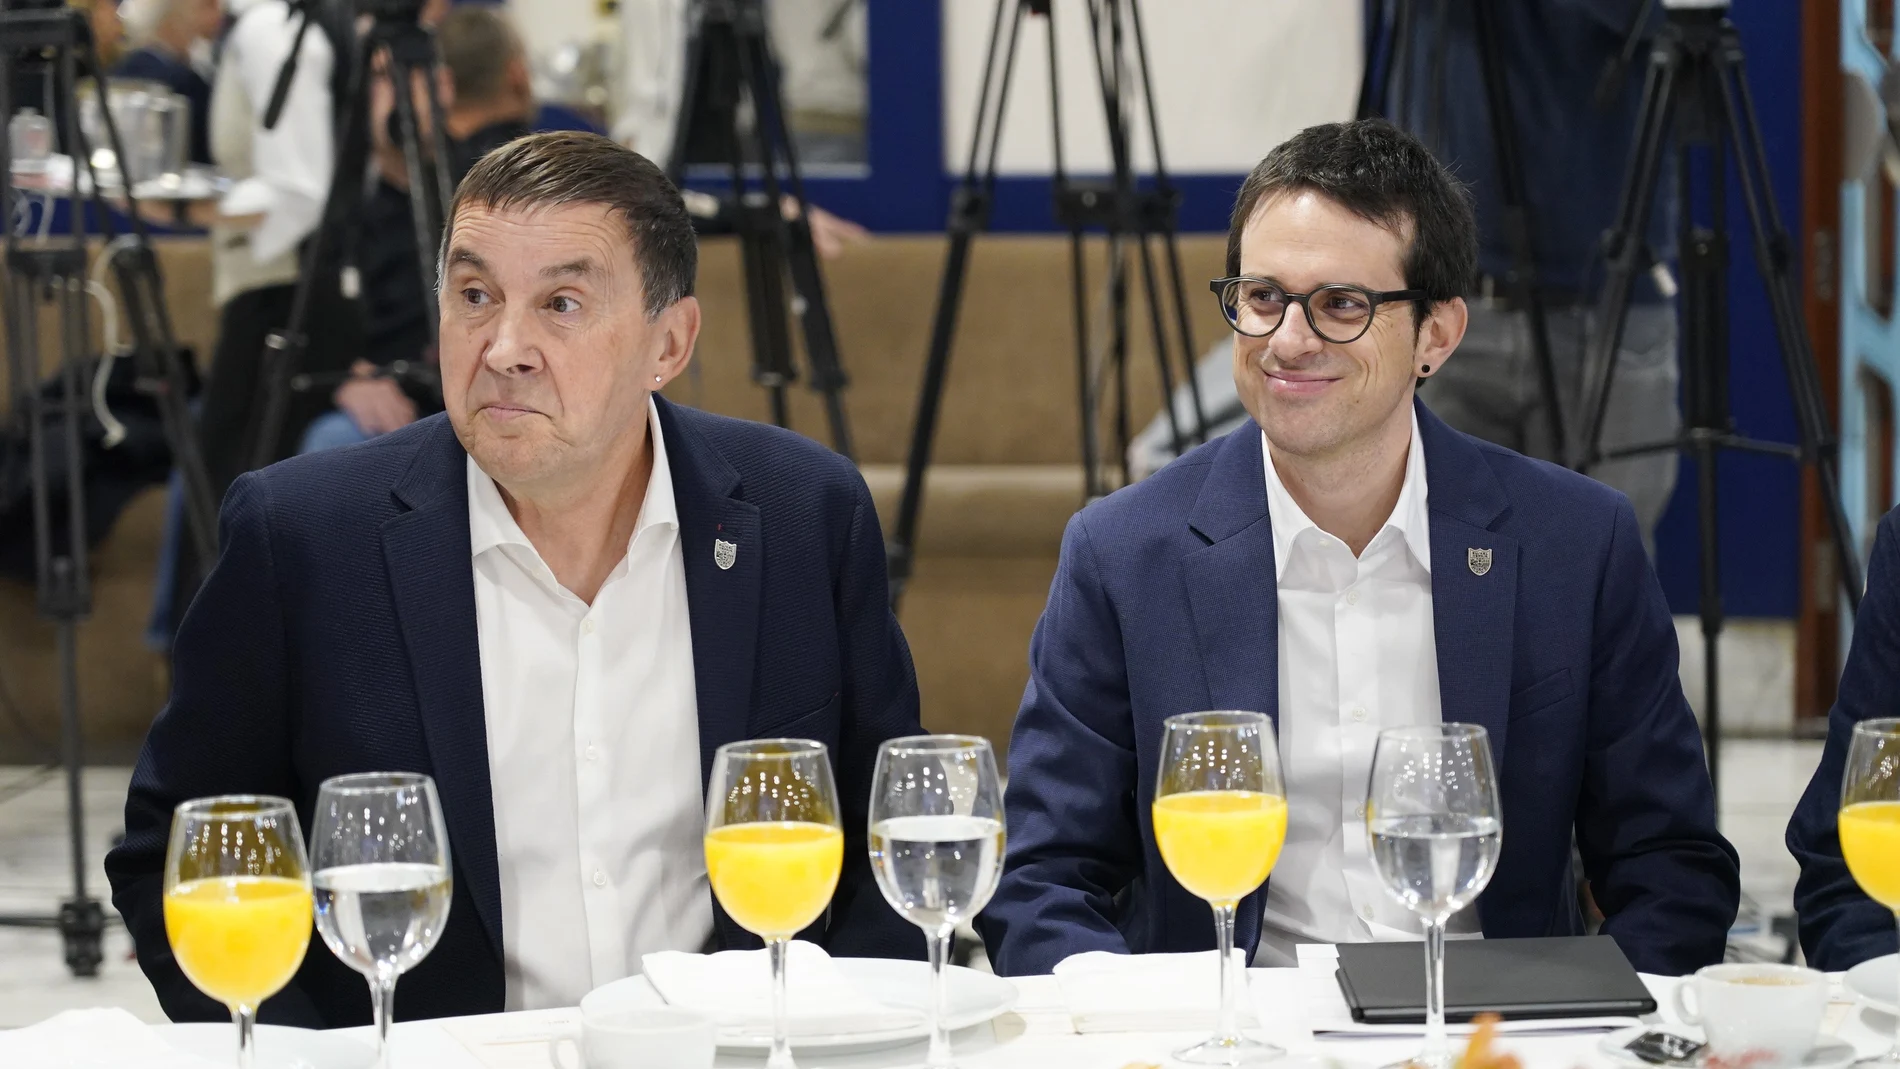 El coordinador general de EH Bildu, Arnaldo Otegi, y el candidato de EH Bildu a Lehendakari, Pello Otxandiano, durante el desayuno organizado por Fórum Europa, en el Hotel Ercilla de Bilbao, a 30 de enero de 2024, en Bilbao, Vizcaya.